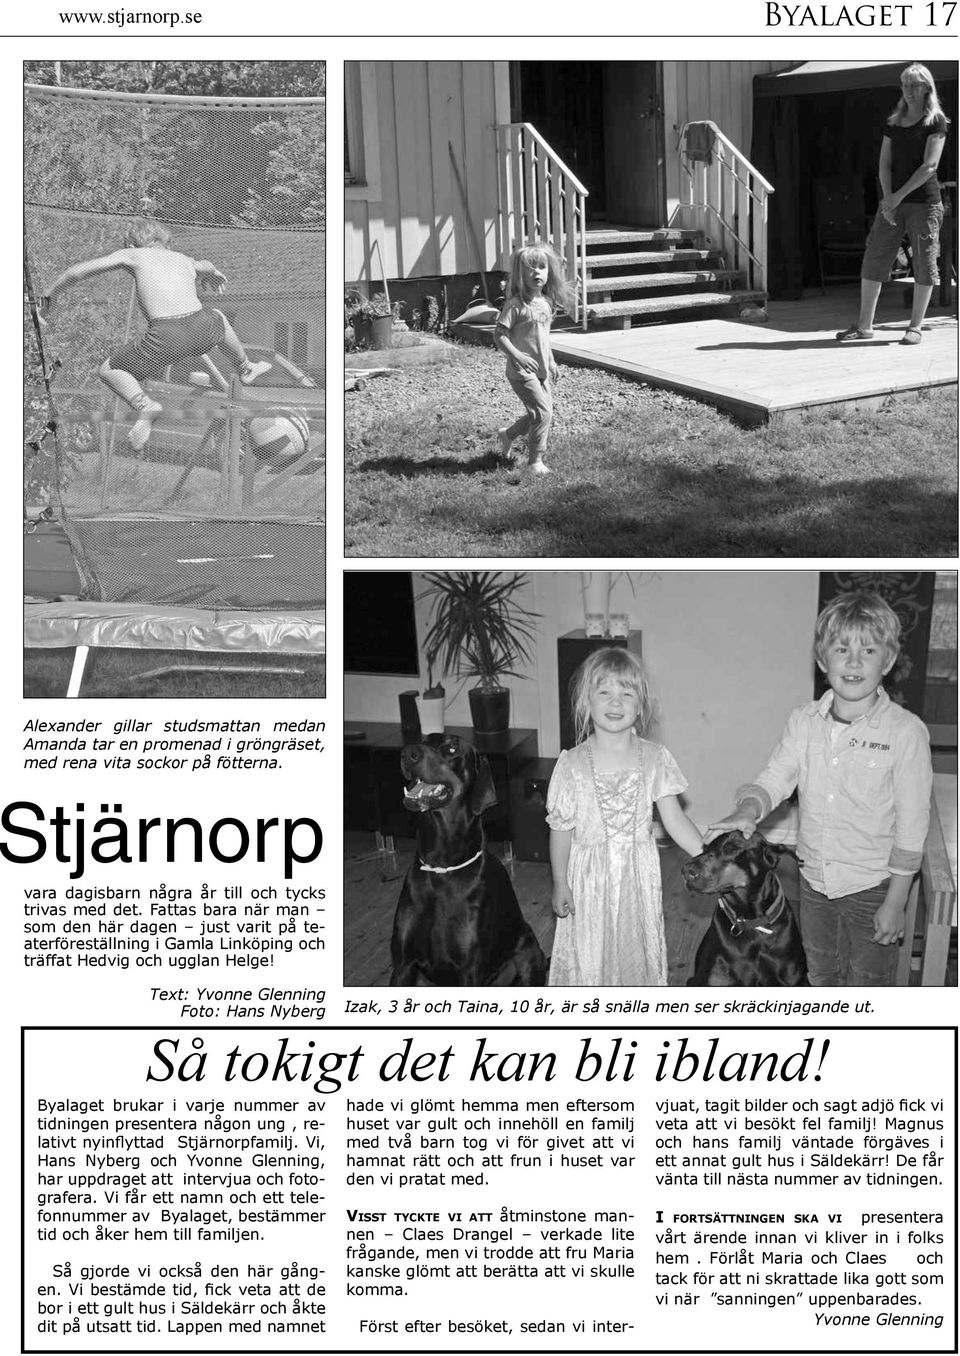 Text: Yvonne Glenning Foto: Hans Nyberg Byalaget brukar i varje nummer av tidningen presentera någon ung, relativt nyinflyttad Stjärnorpfamilj.